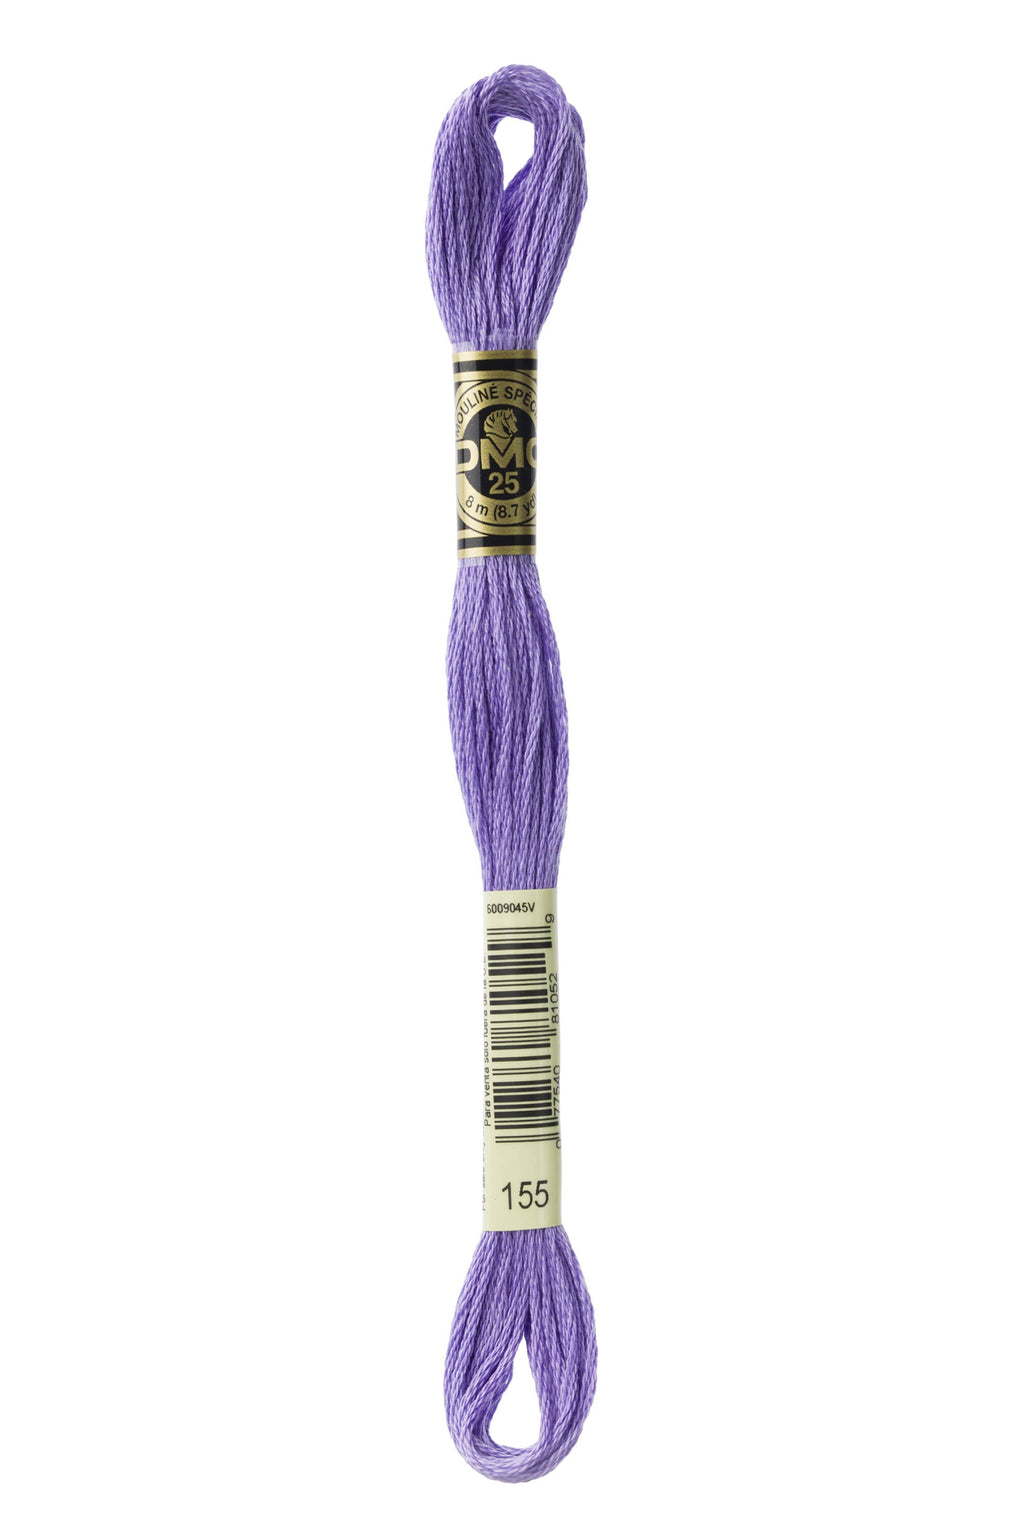 DMC 0155 Cotton 6 Strand Floss ( Med Dark Blue Violet)